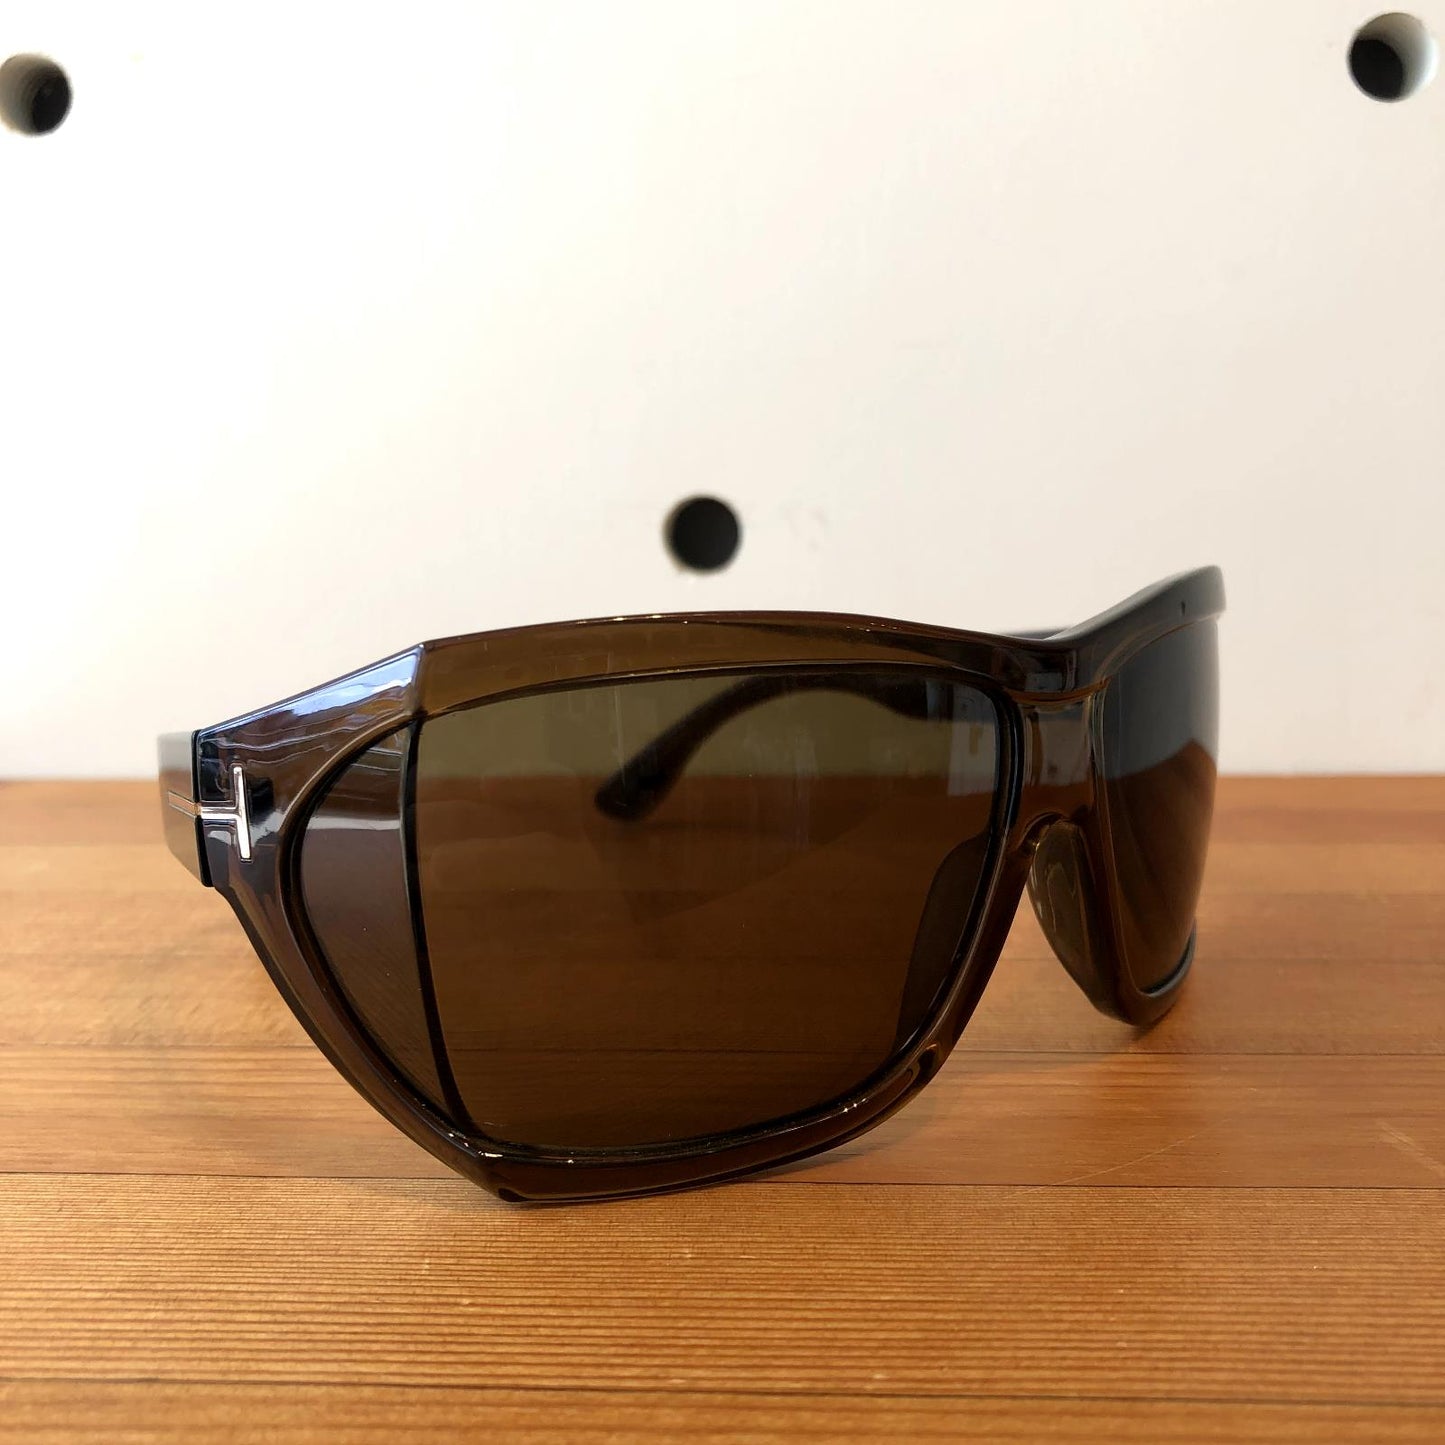 Tom Ford Transparent Brown Square Wrap Sedgewick Sunglasses w/ Case 0706AV